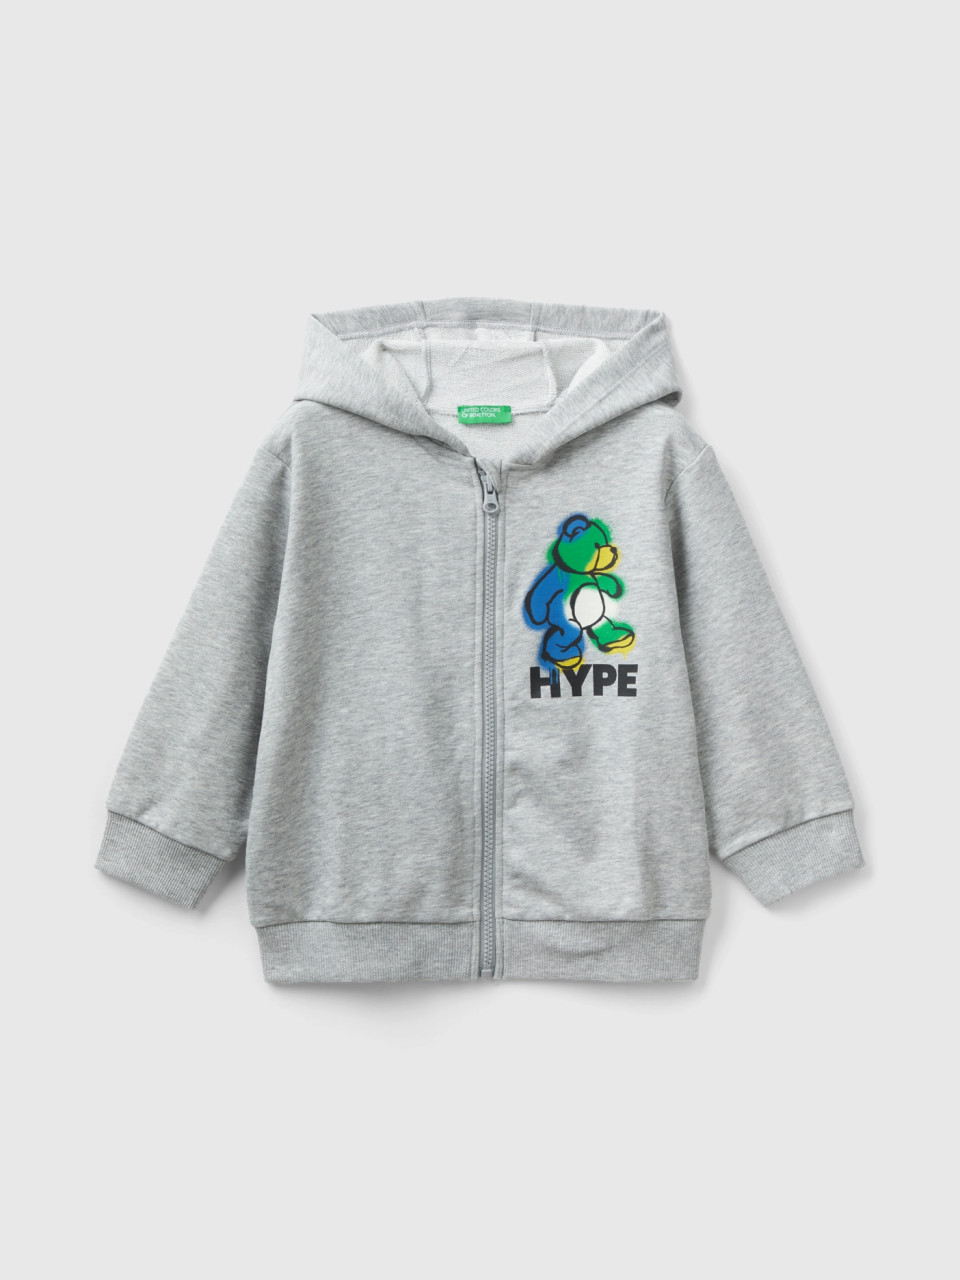 Benetton, Oversize Sweatshirt With Hood, Light Gray, Kids